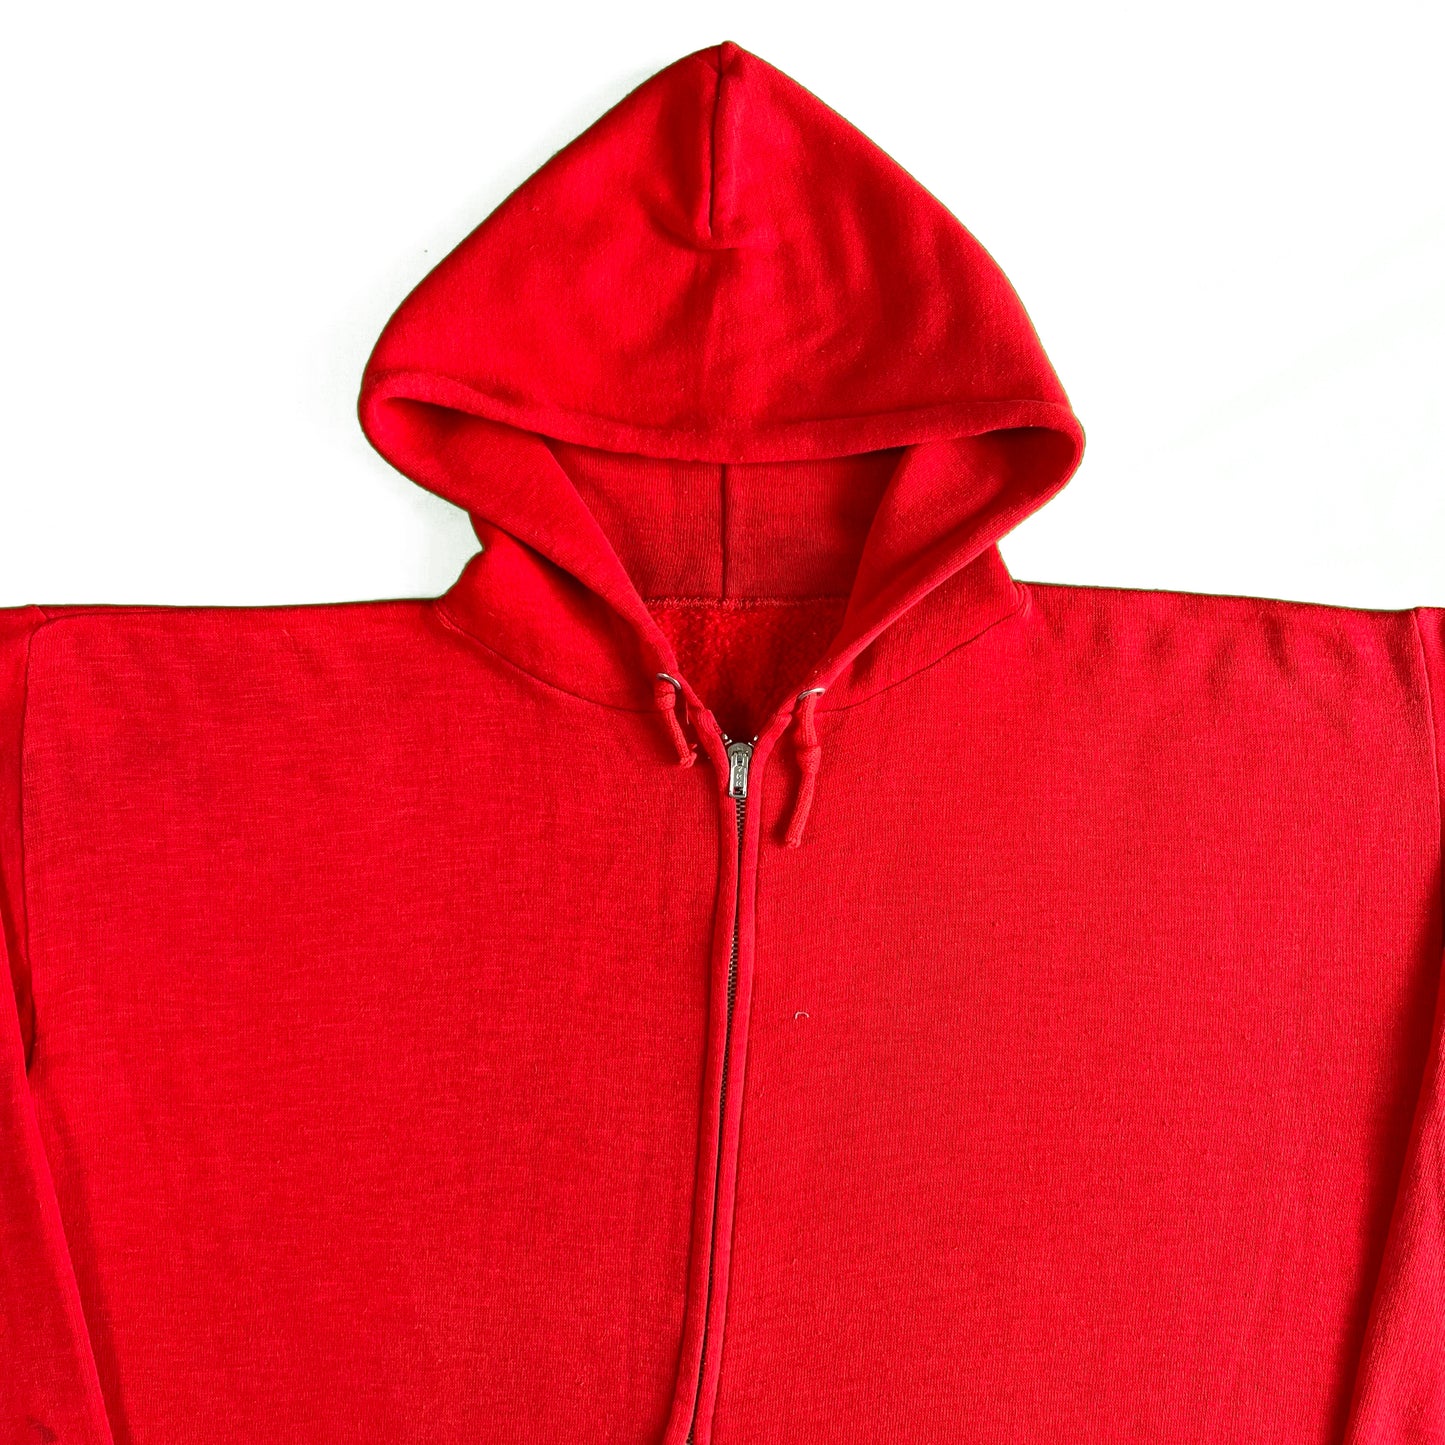 Vintage Blank Red Zip Up Hoodie- XS,M,L